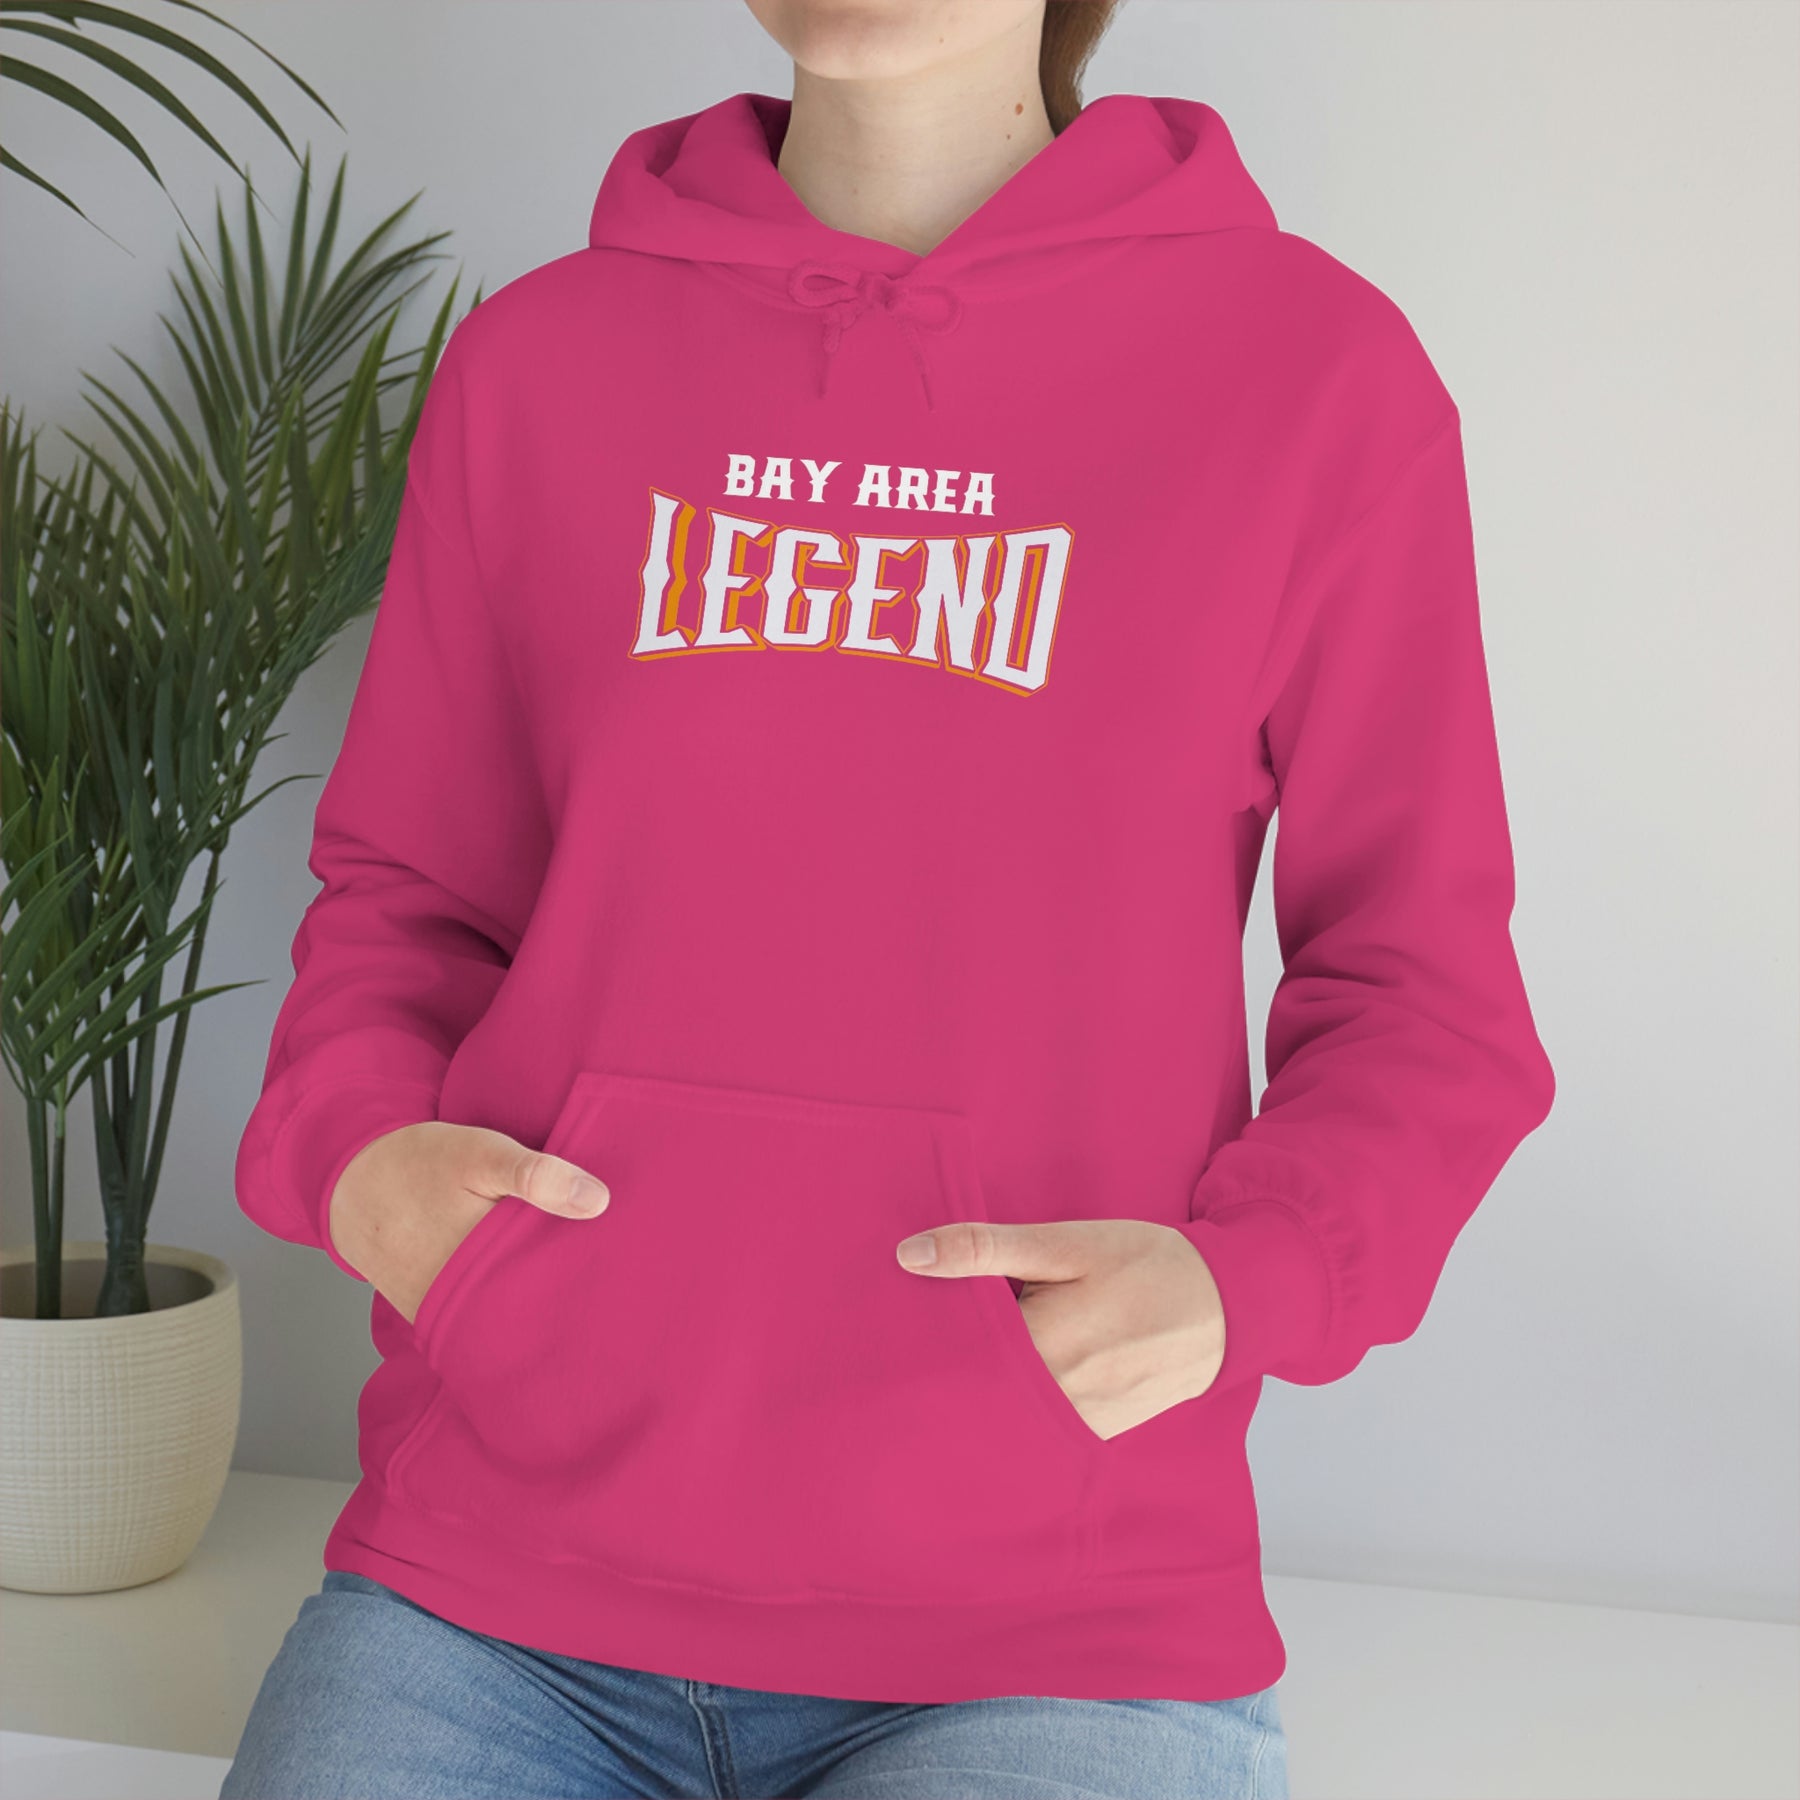 Bay Area Legend Heavy Blend™ Hooded Sweatshirt